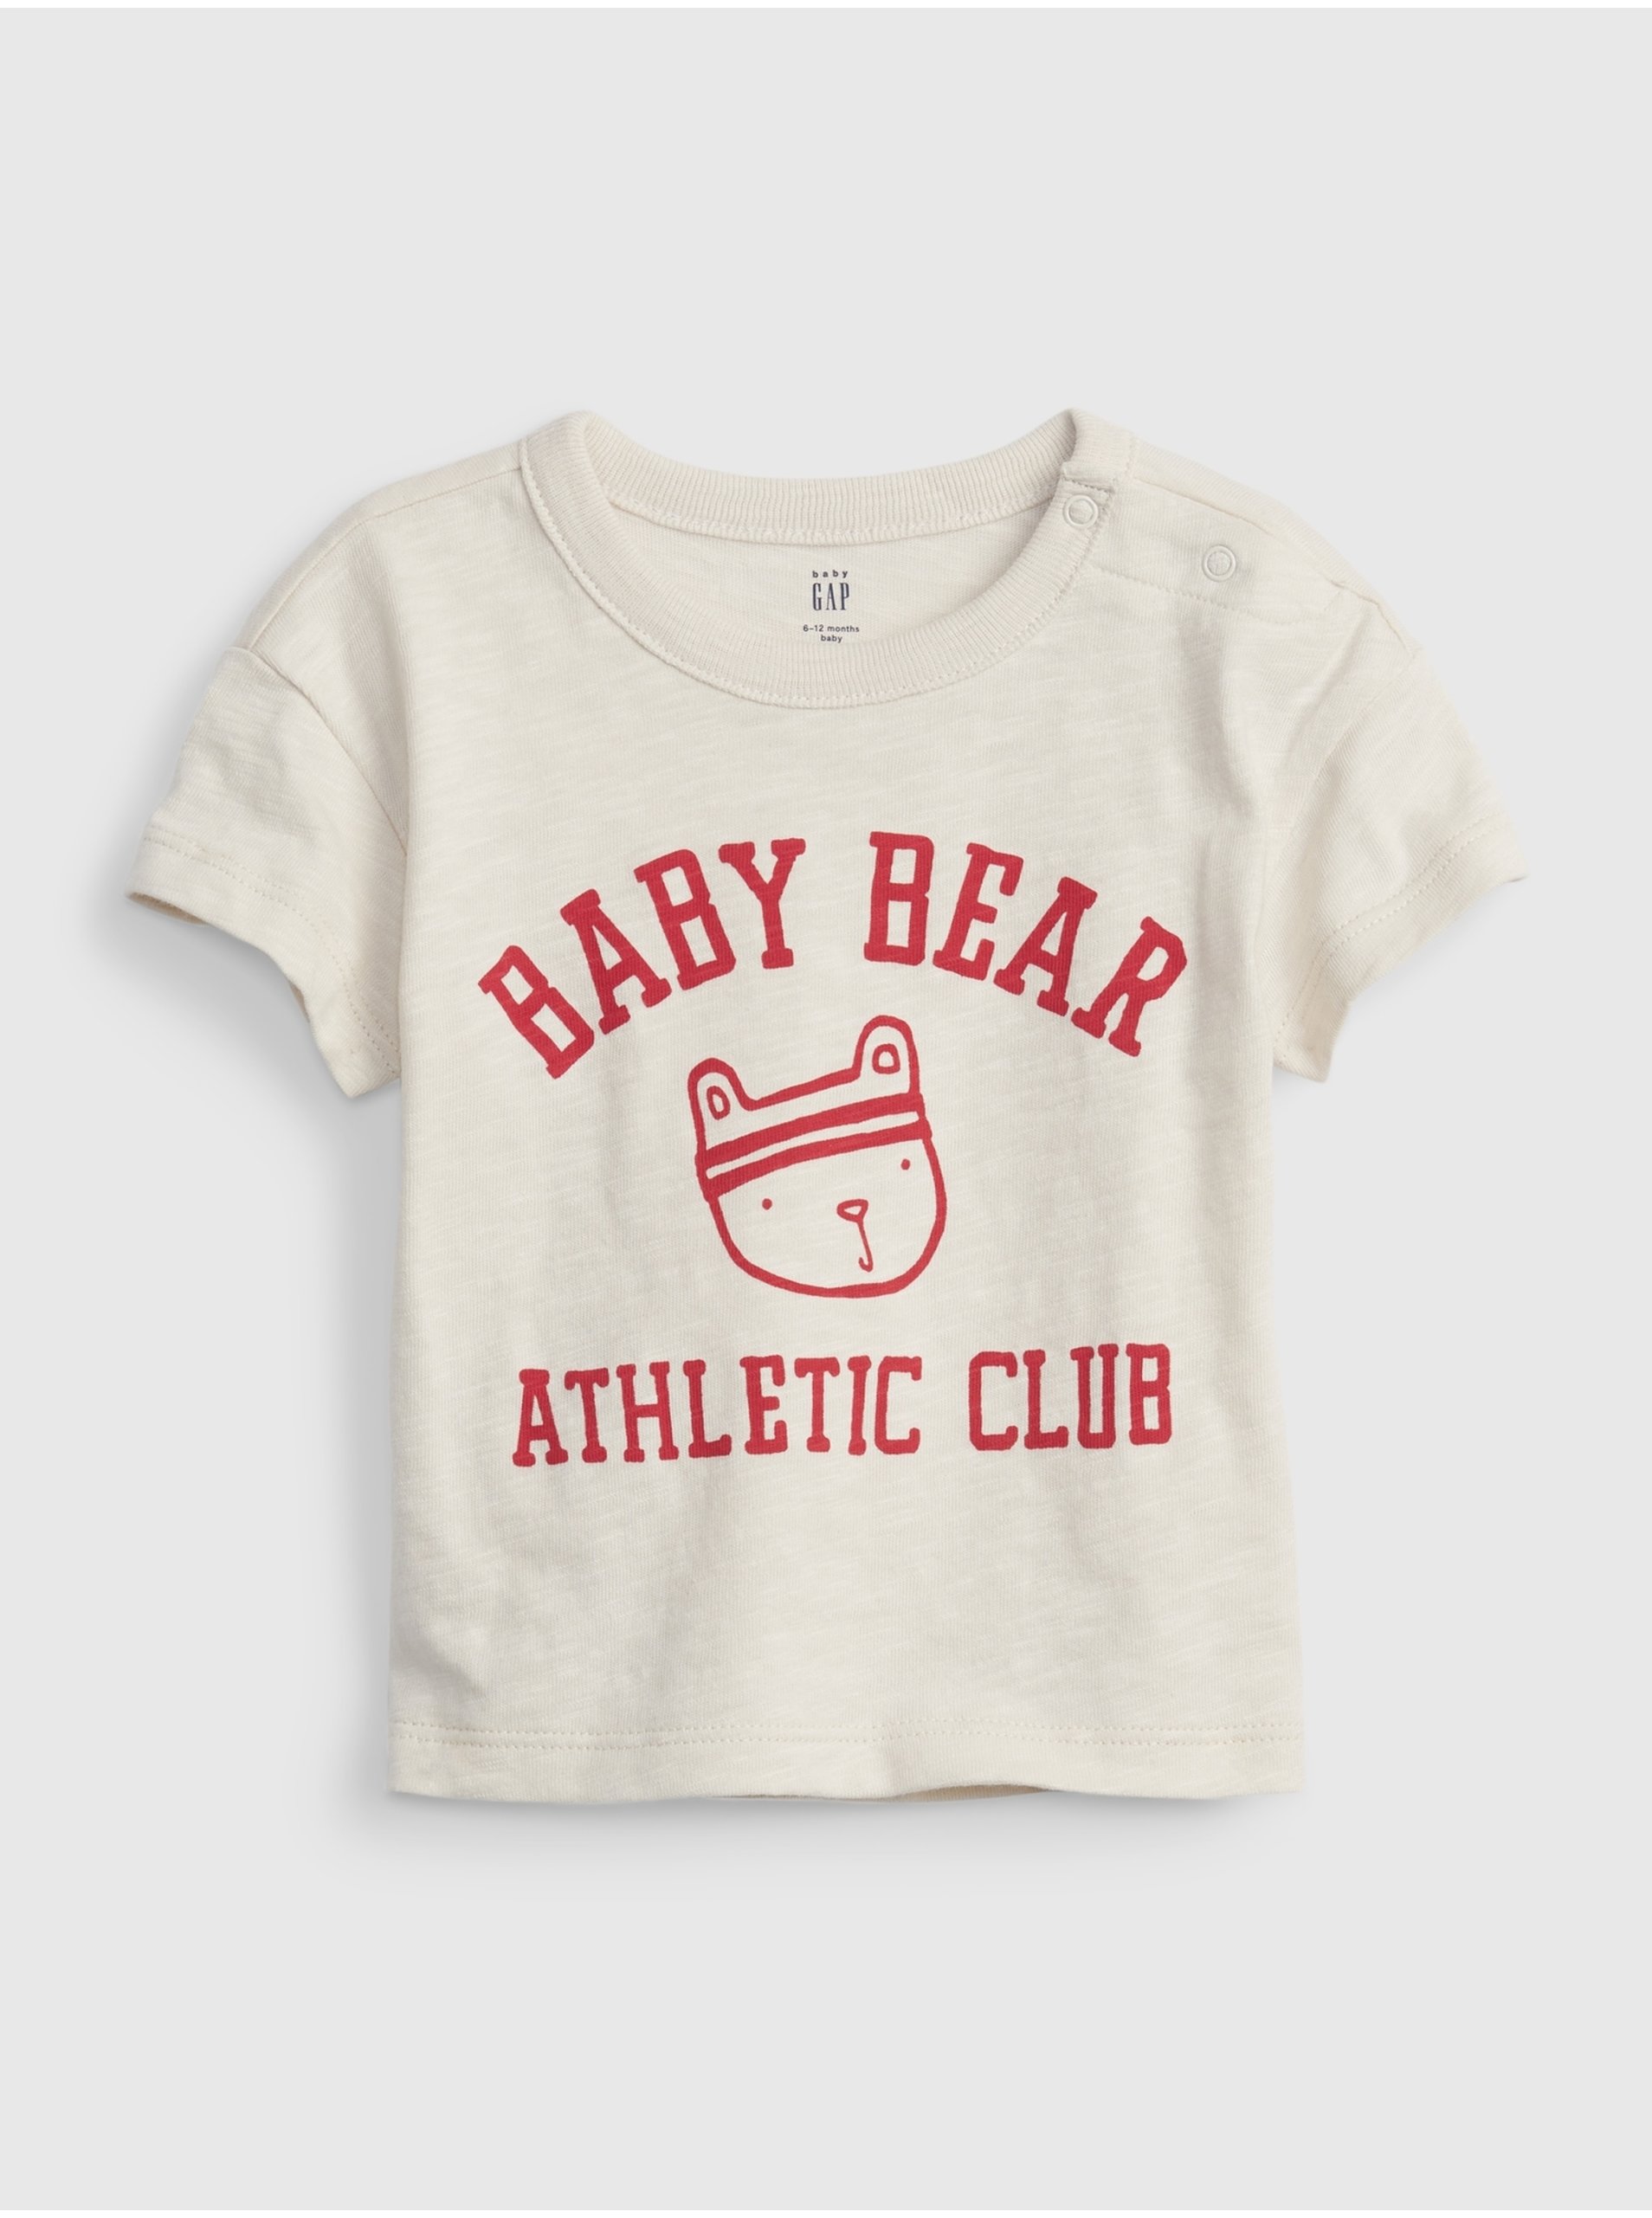 Lacno Smotanové chlapčenské tričko GAP baby bear